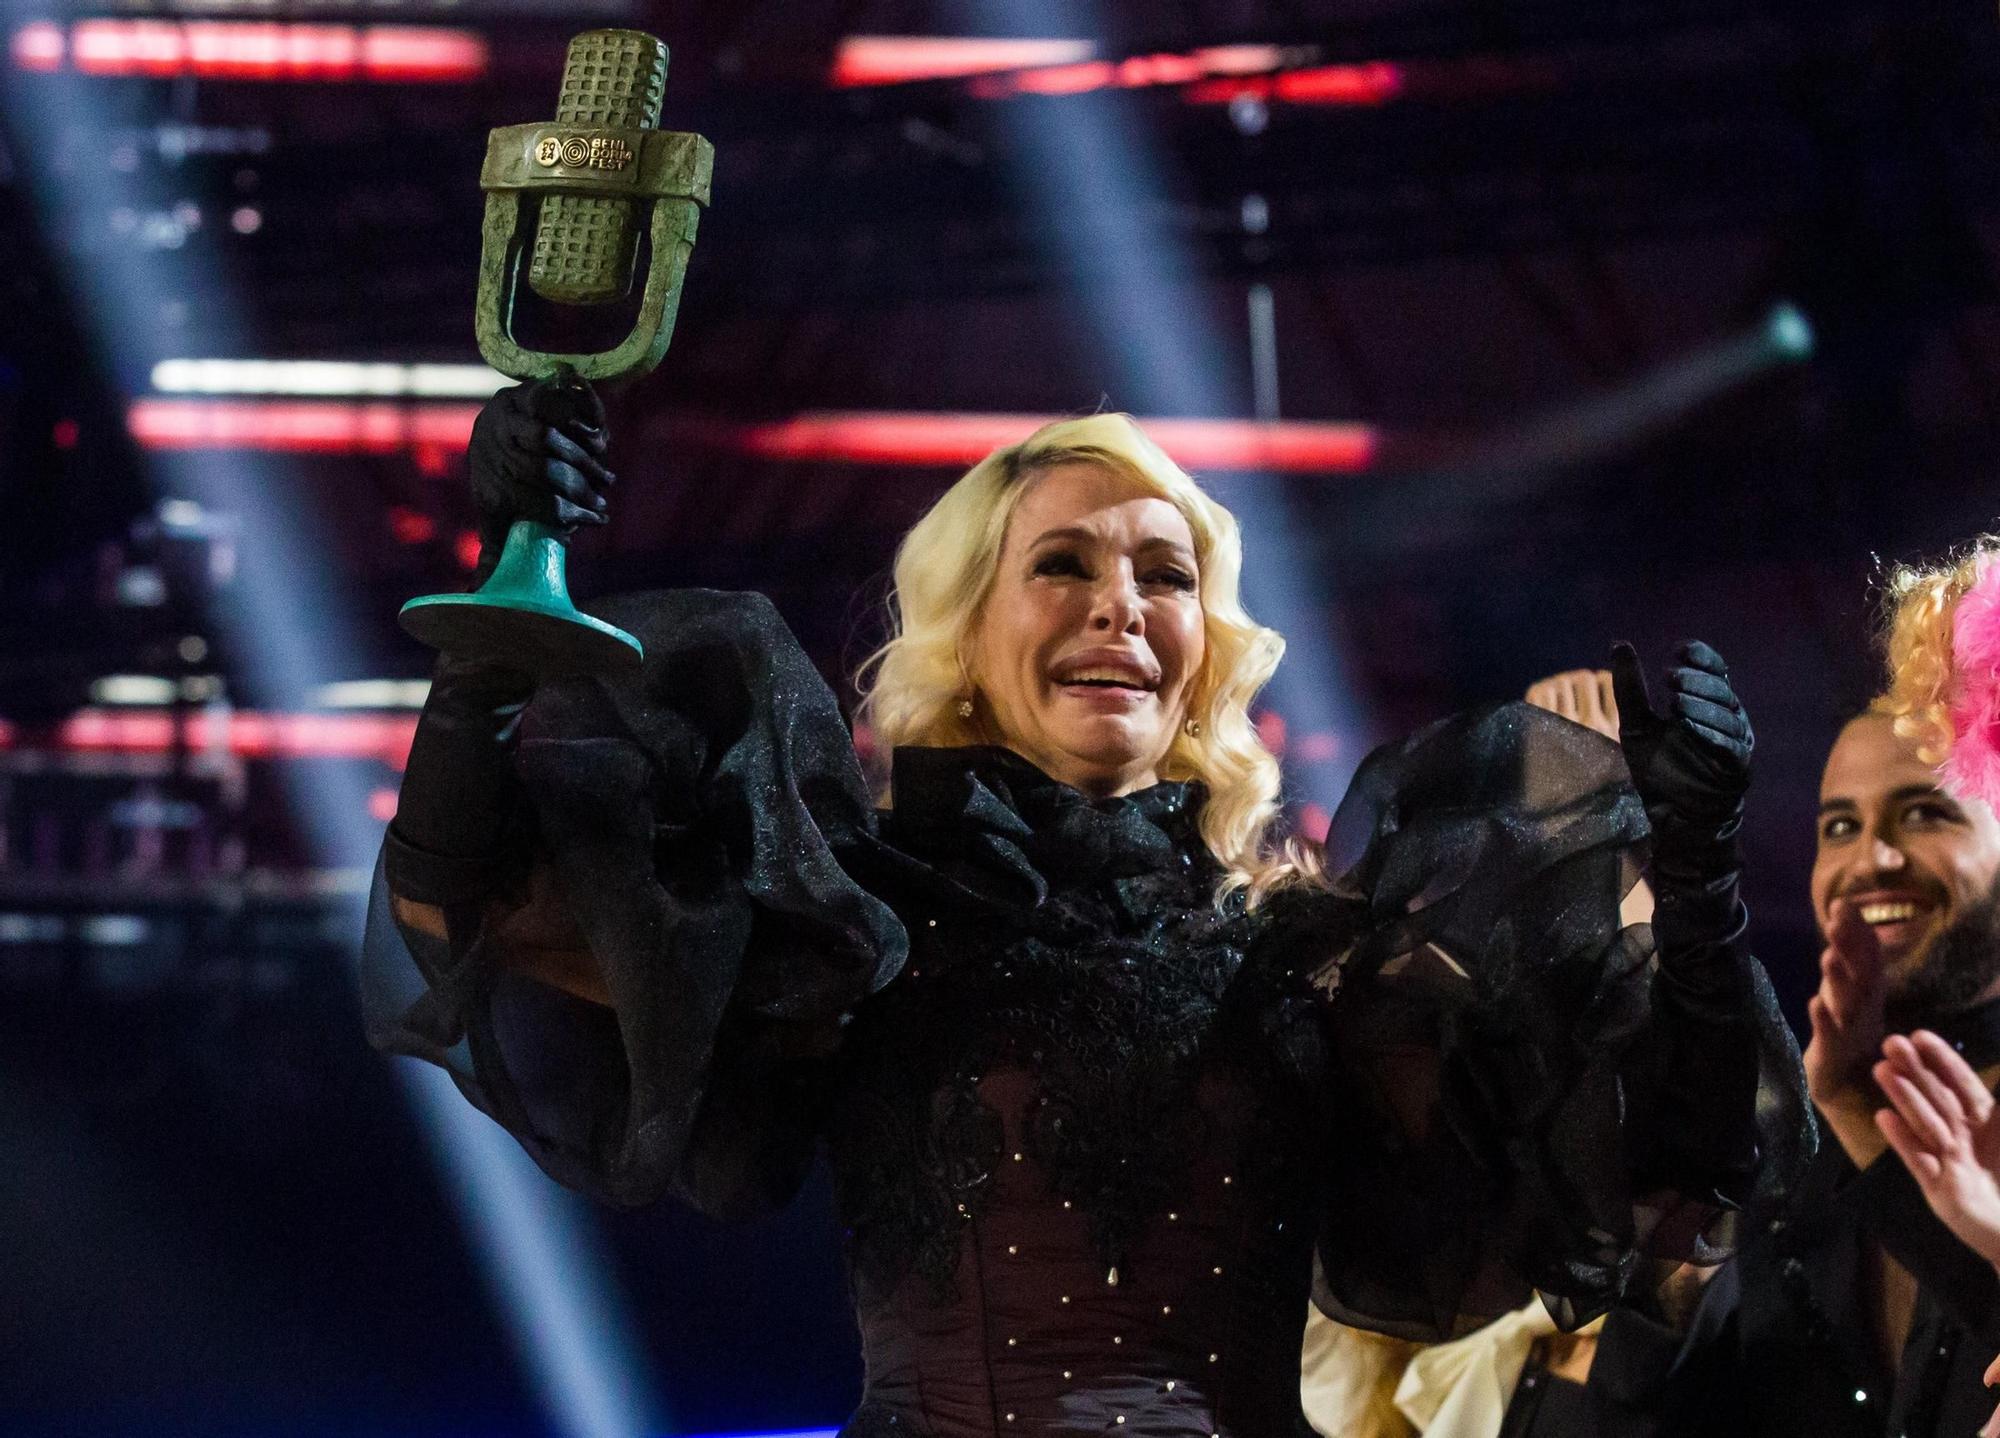 Qué opciones tiene Nebulossa en Eurovisión? Los expertos analizan